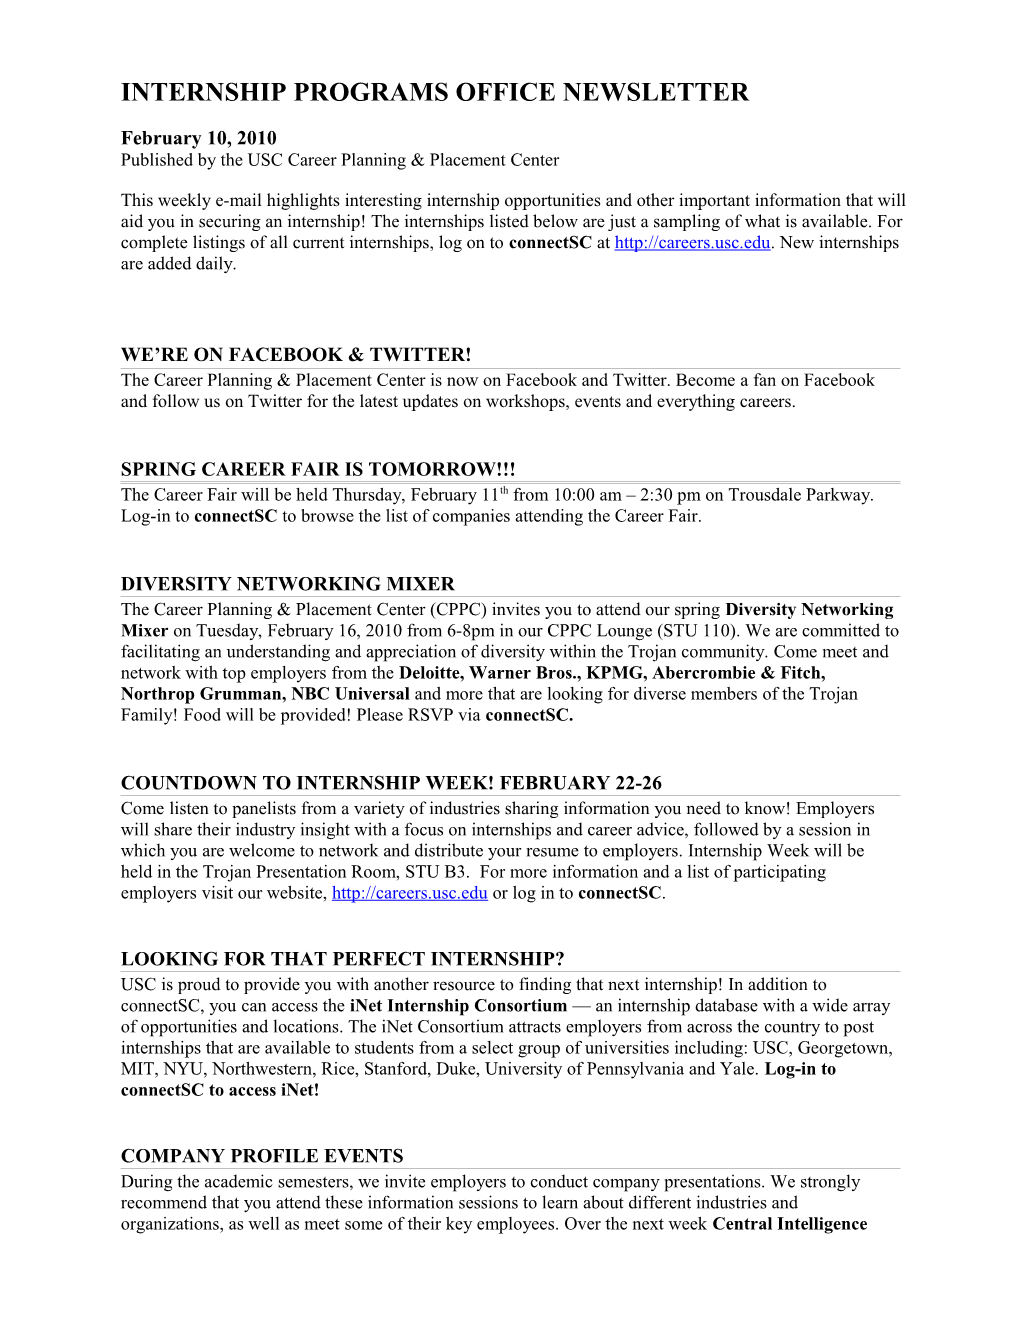 INTERNSHIP PROGRAMS OFFICE September 5, 2006